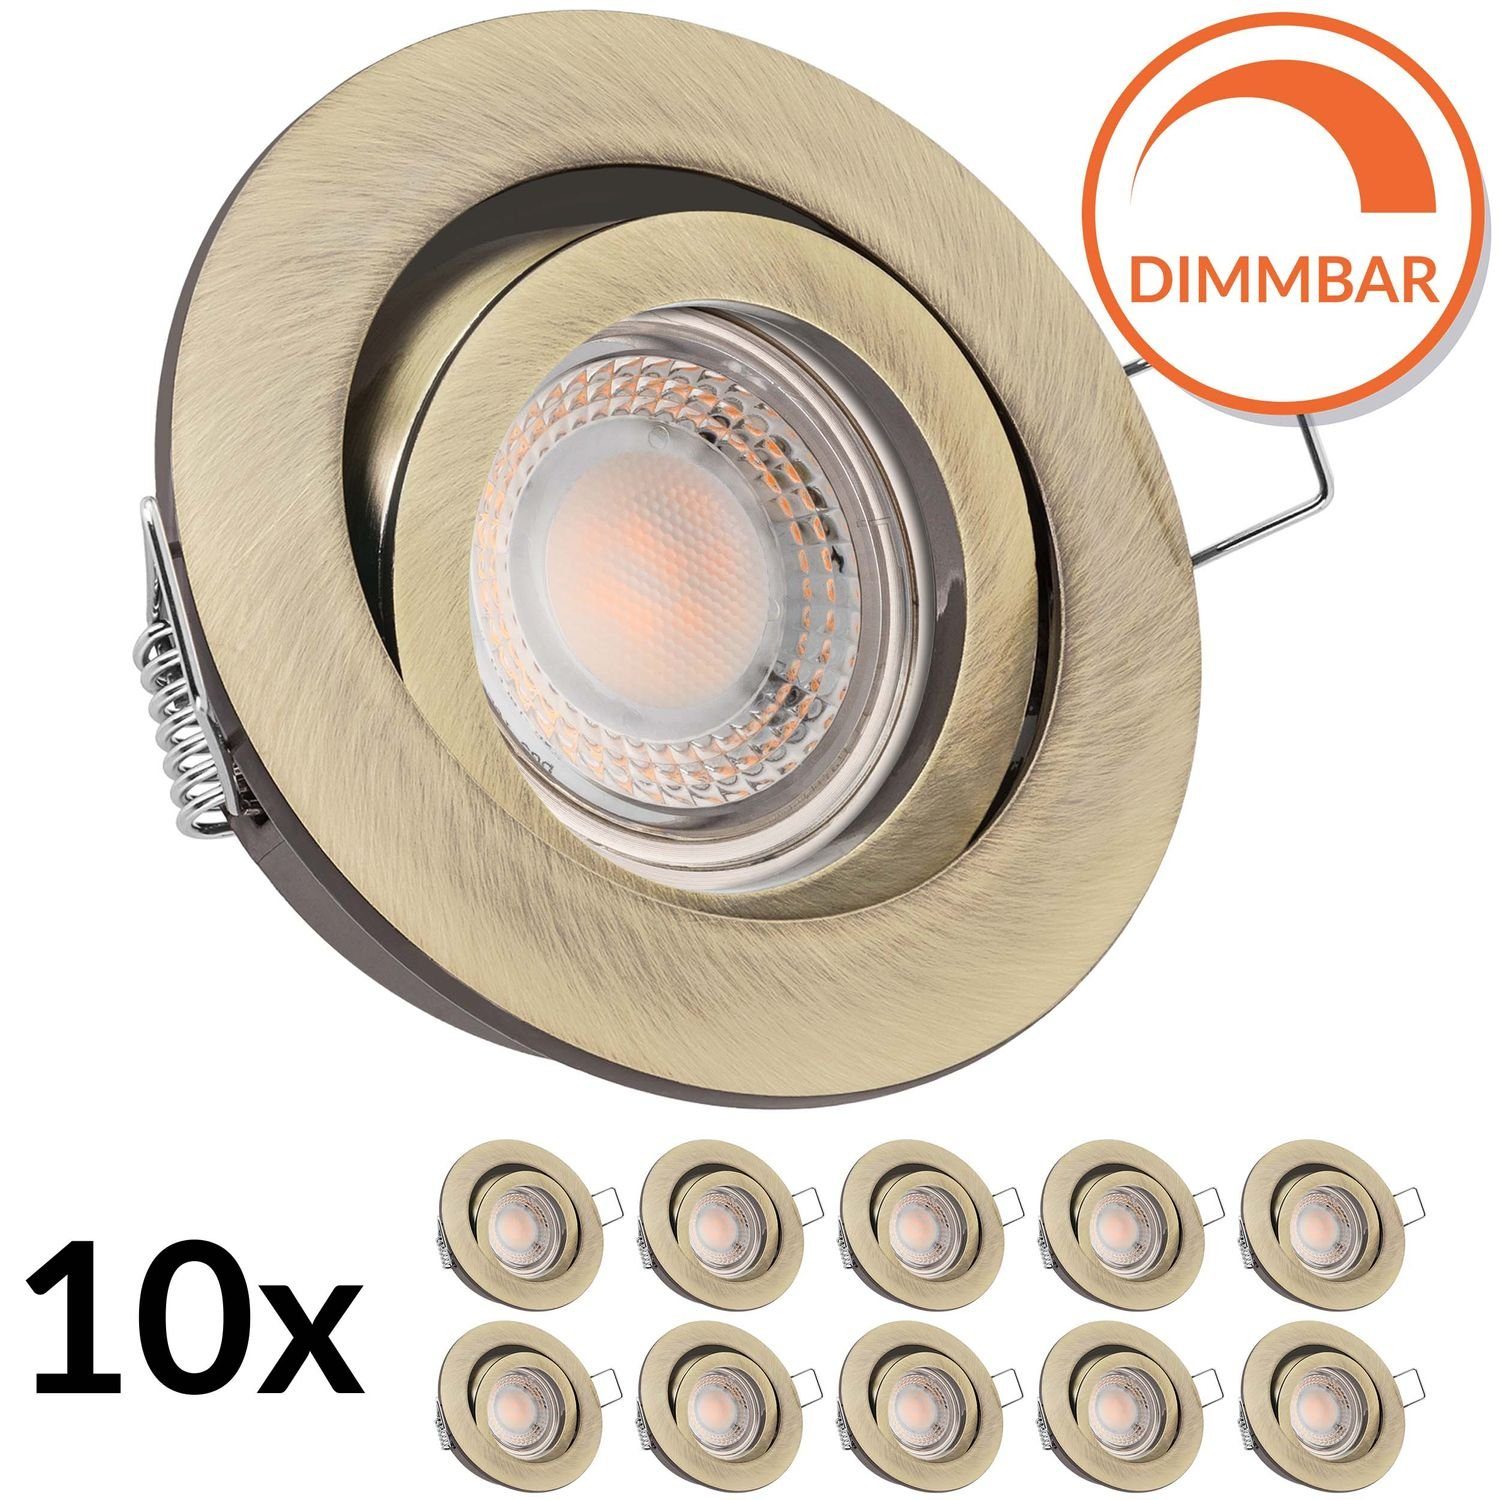 LEDANDO LED Einbaustrahler 10er LED Einbaustrahler Set extra flach in gold / messing mit 5W LED v | Strahler